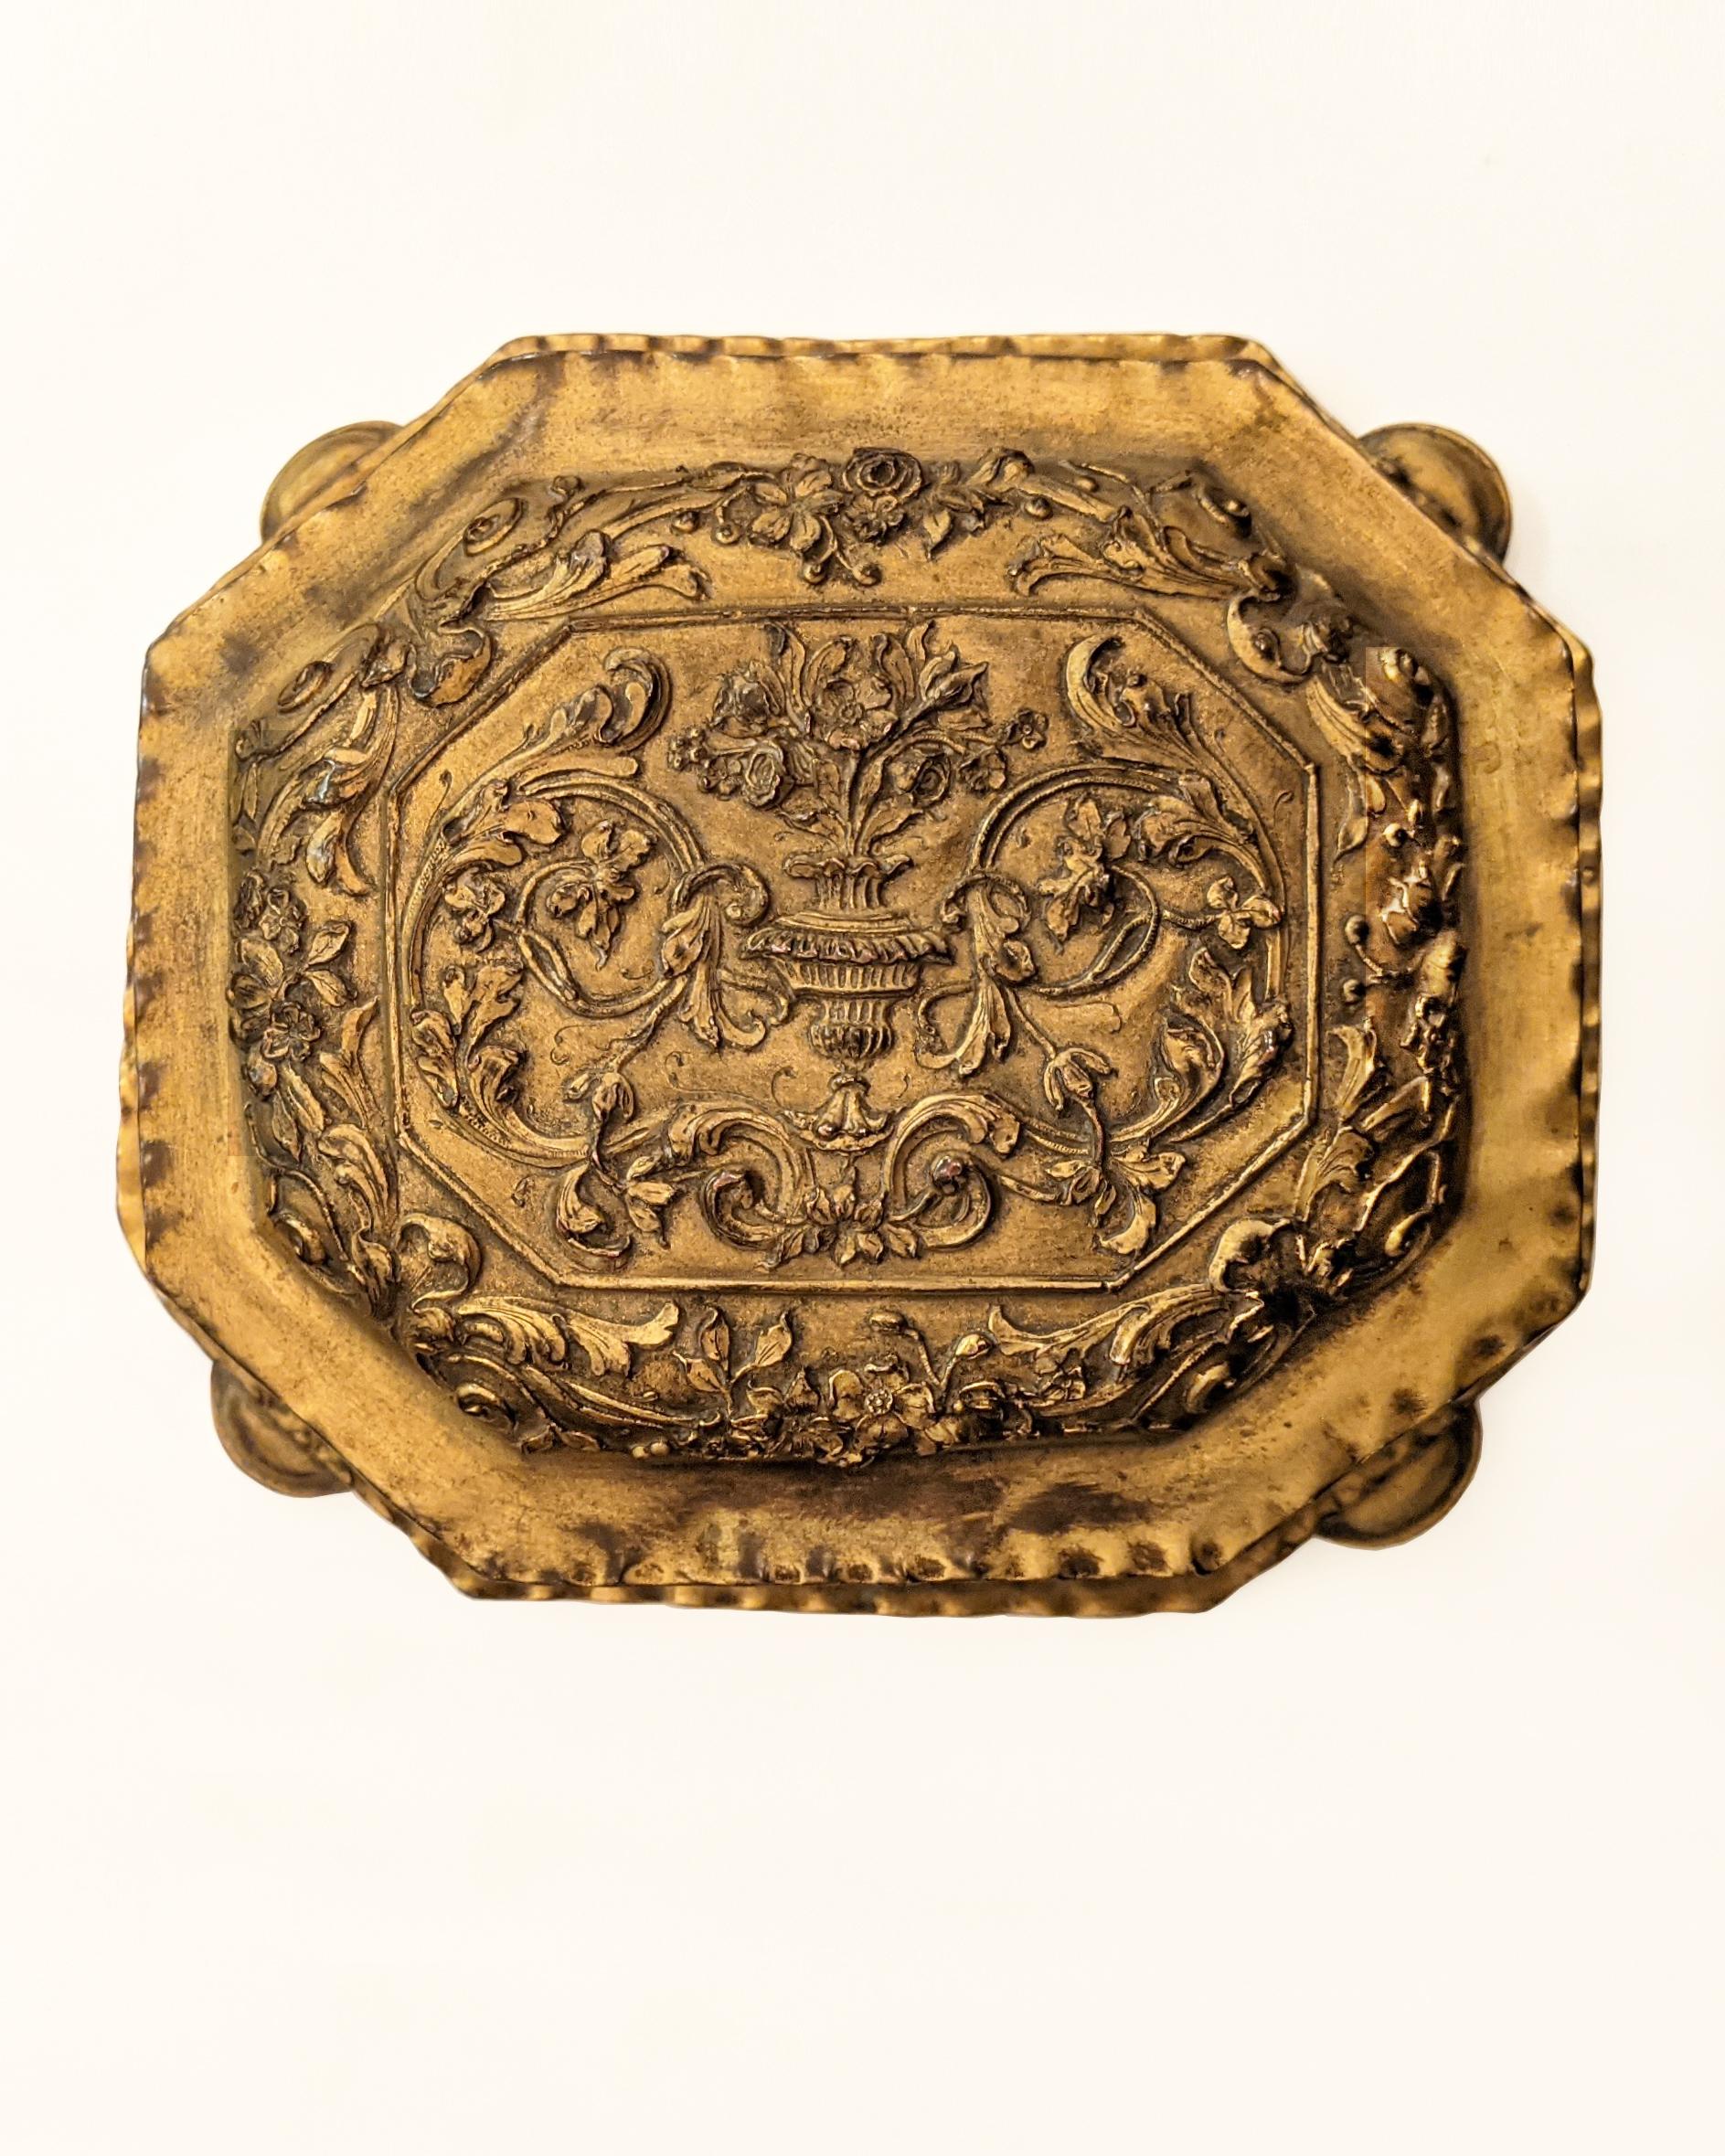 ATA1385

Une boîte à bijoux en cuivre doré doublée de velours rouge. Décoré d'un motif d'arabesques foliacées très nettes. Signé sur le couvercle par l'artisan de New York E. F. Caldwell.

Dimensions générales : 3-1/2